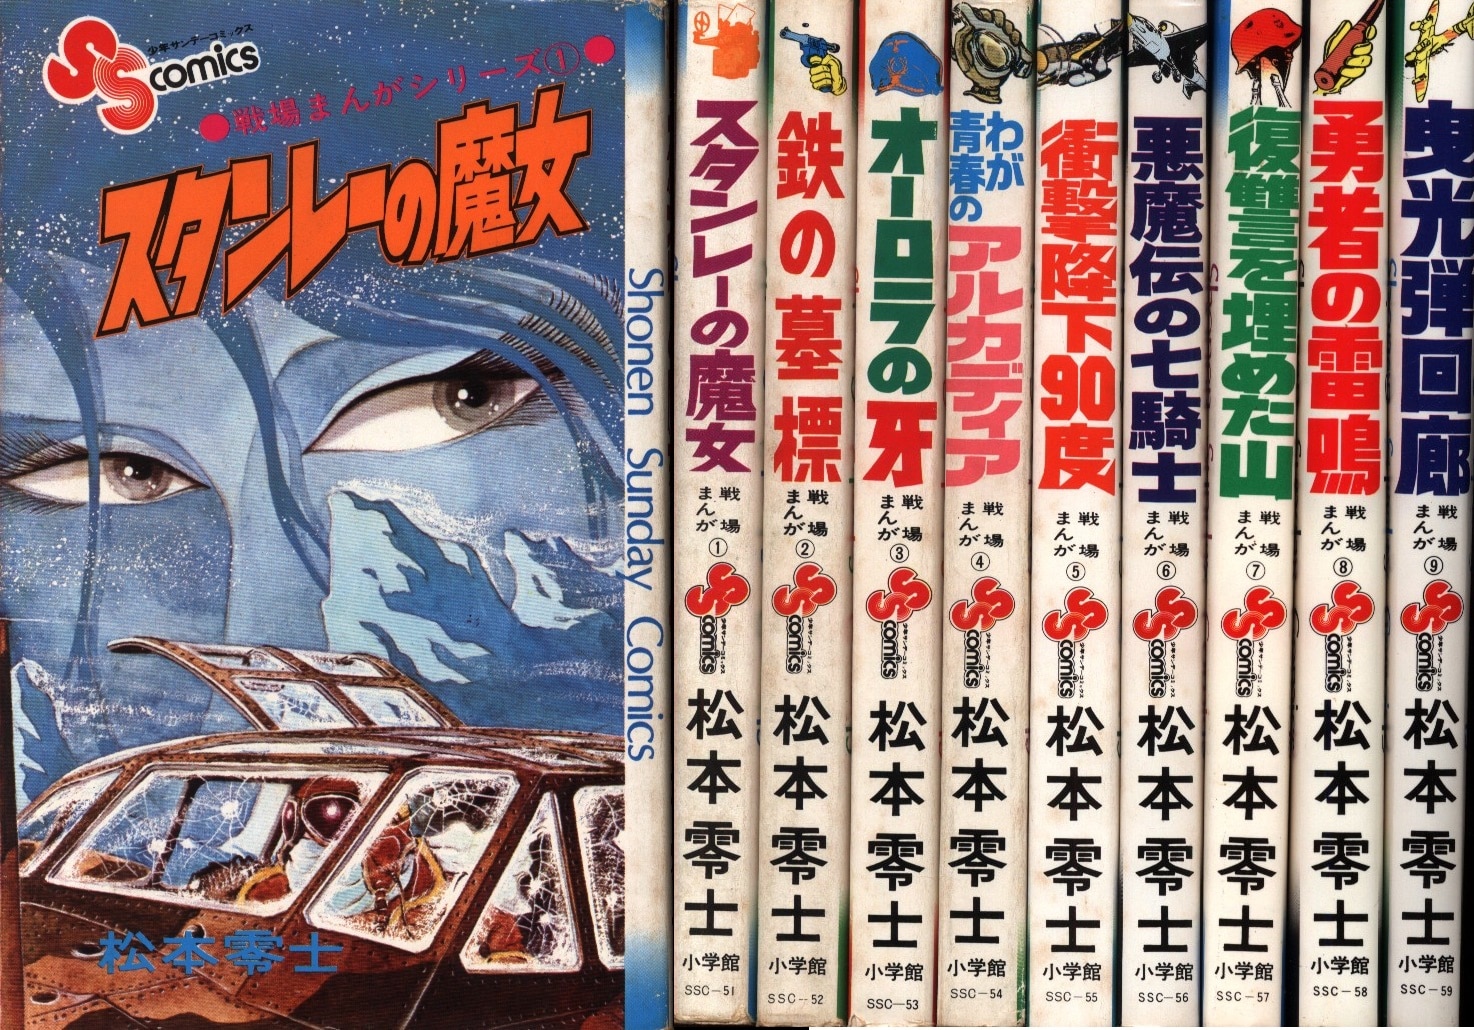 松本零士 戦場まんがシリーズ全9巻 少年サンデーコミックス - 全巻セット